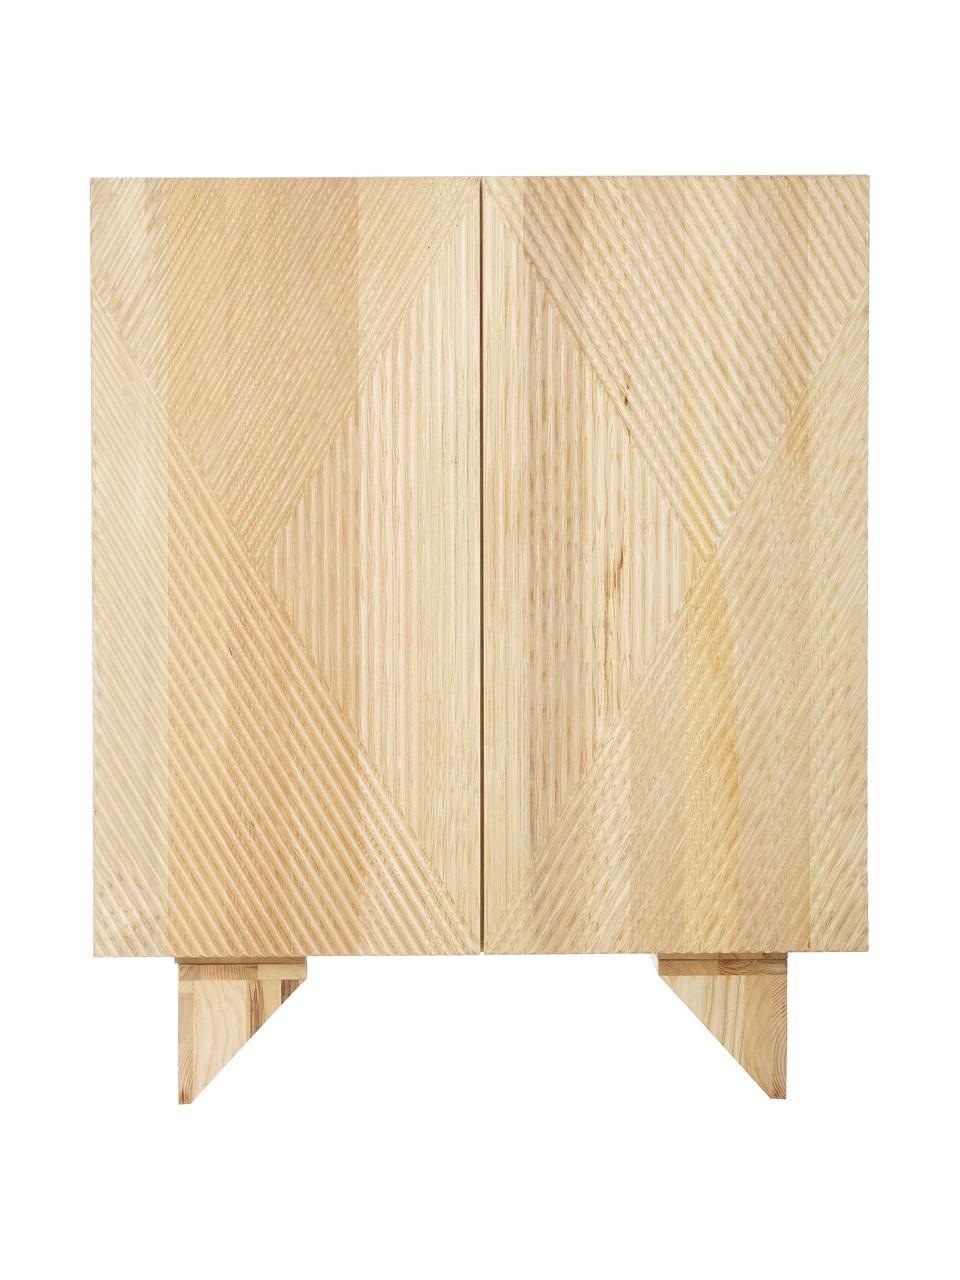 Rangement en bois de frêne massif Louis, Bois de frêne, larg. 100 x haut. 120 cm